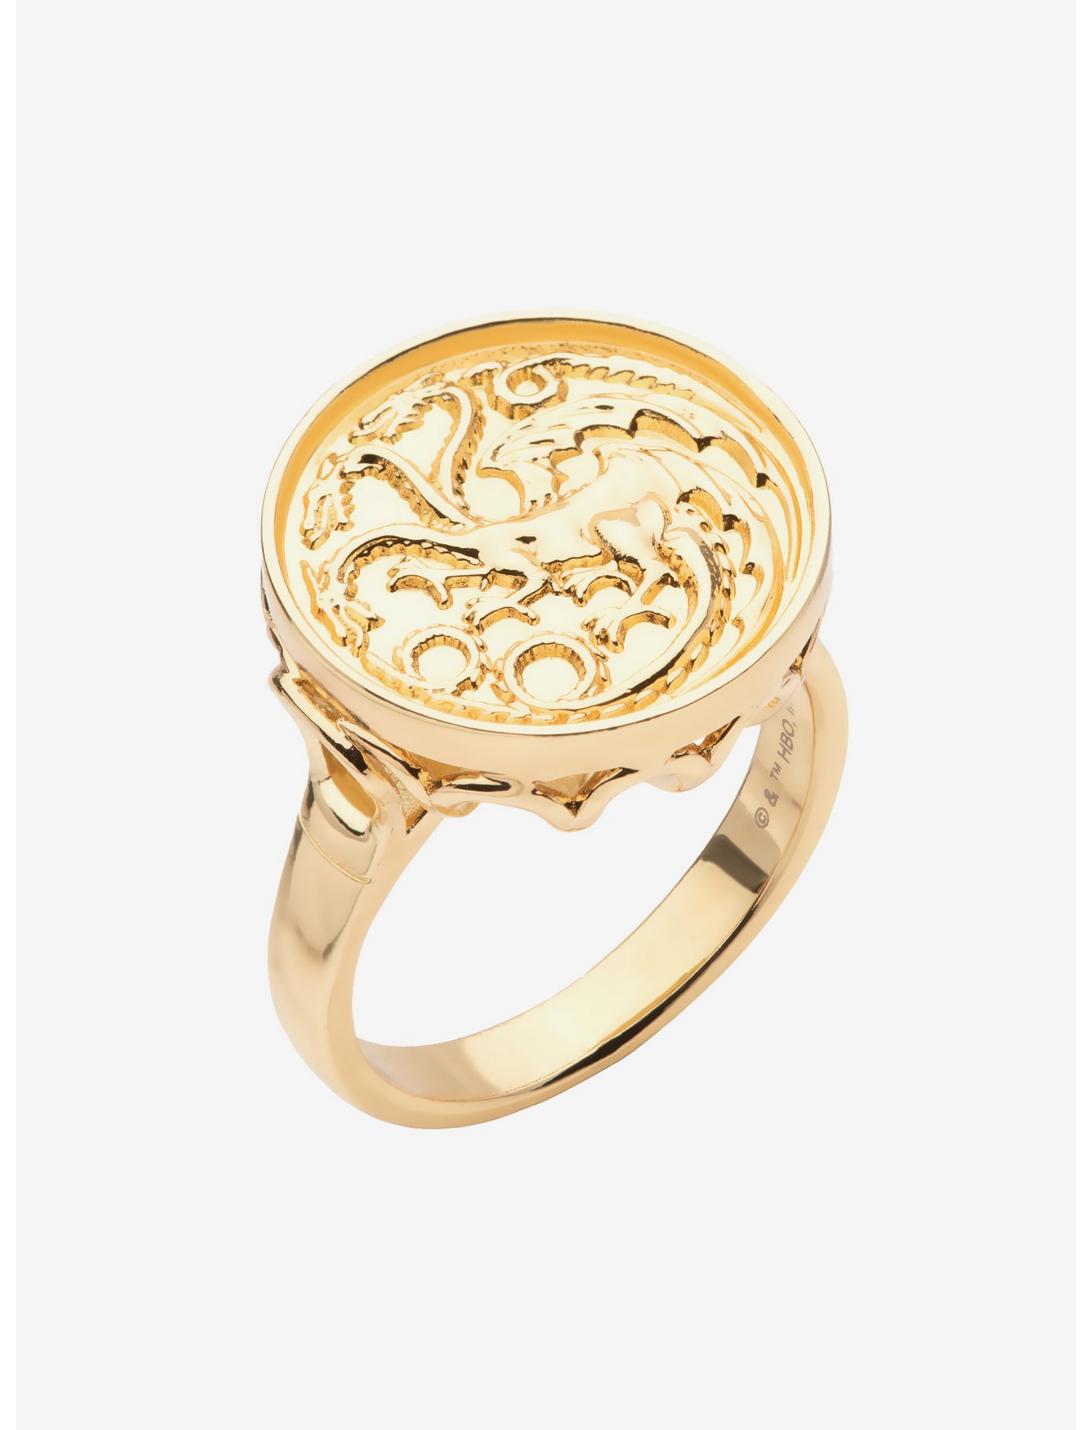 House of the Dragon Targaryen Sigil Ring, GOLD, hi-res